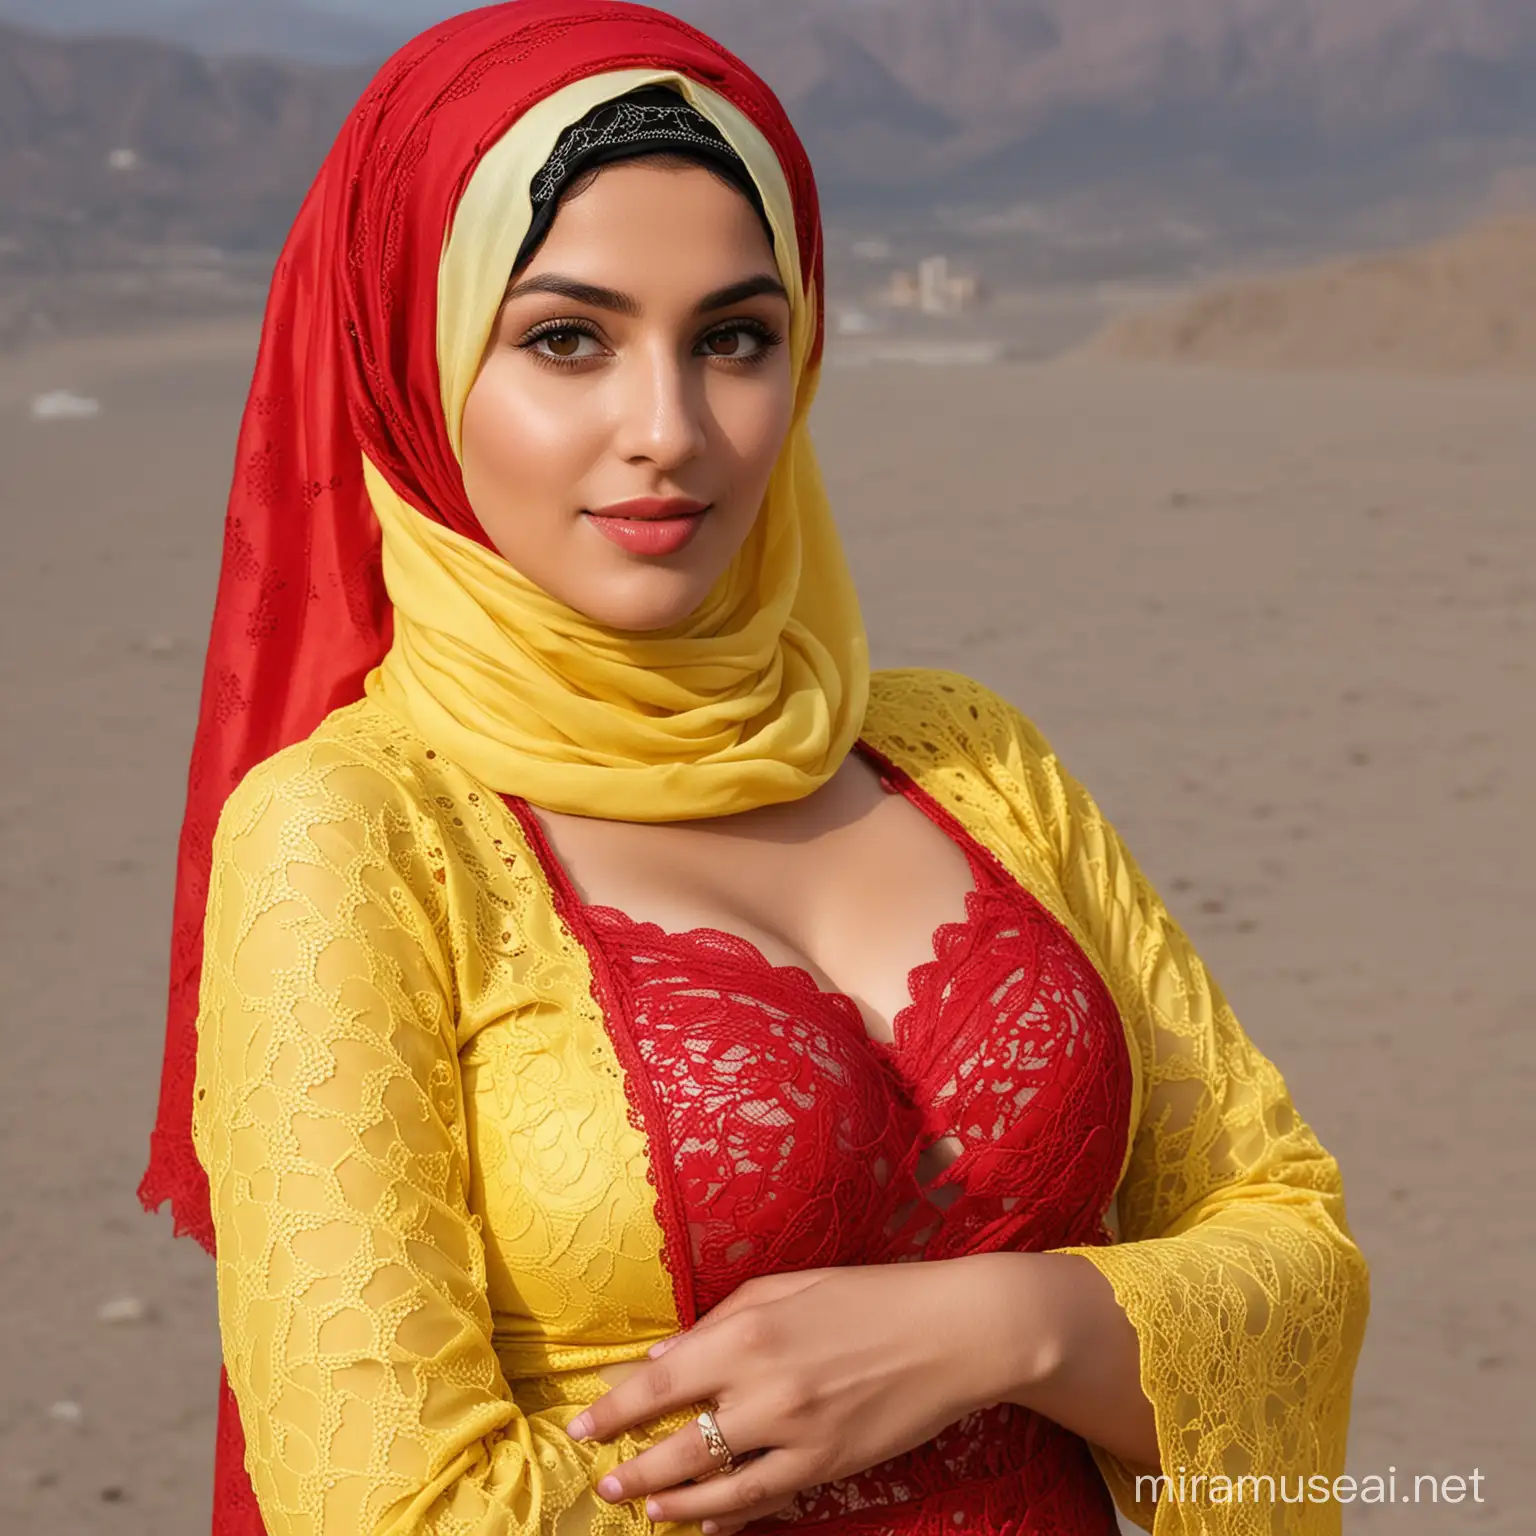 Beautiful Girl in Oman Wearing Hijab and Colorful Dress